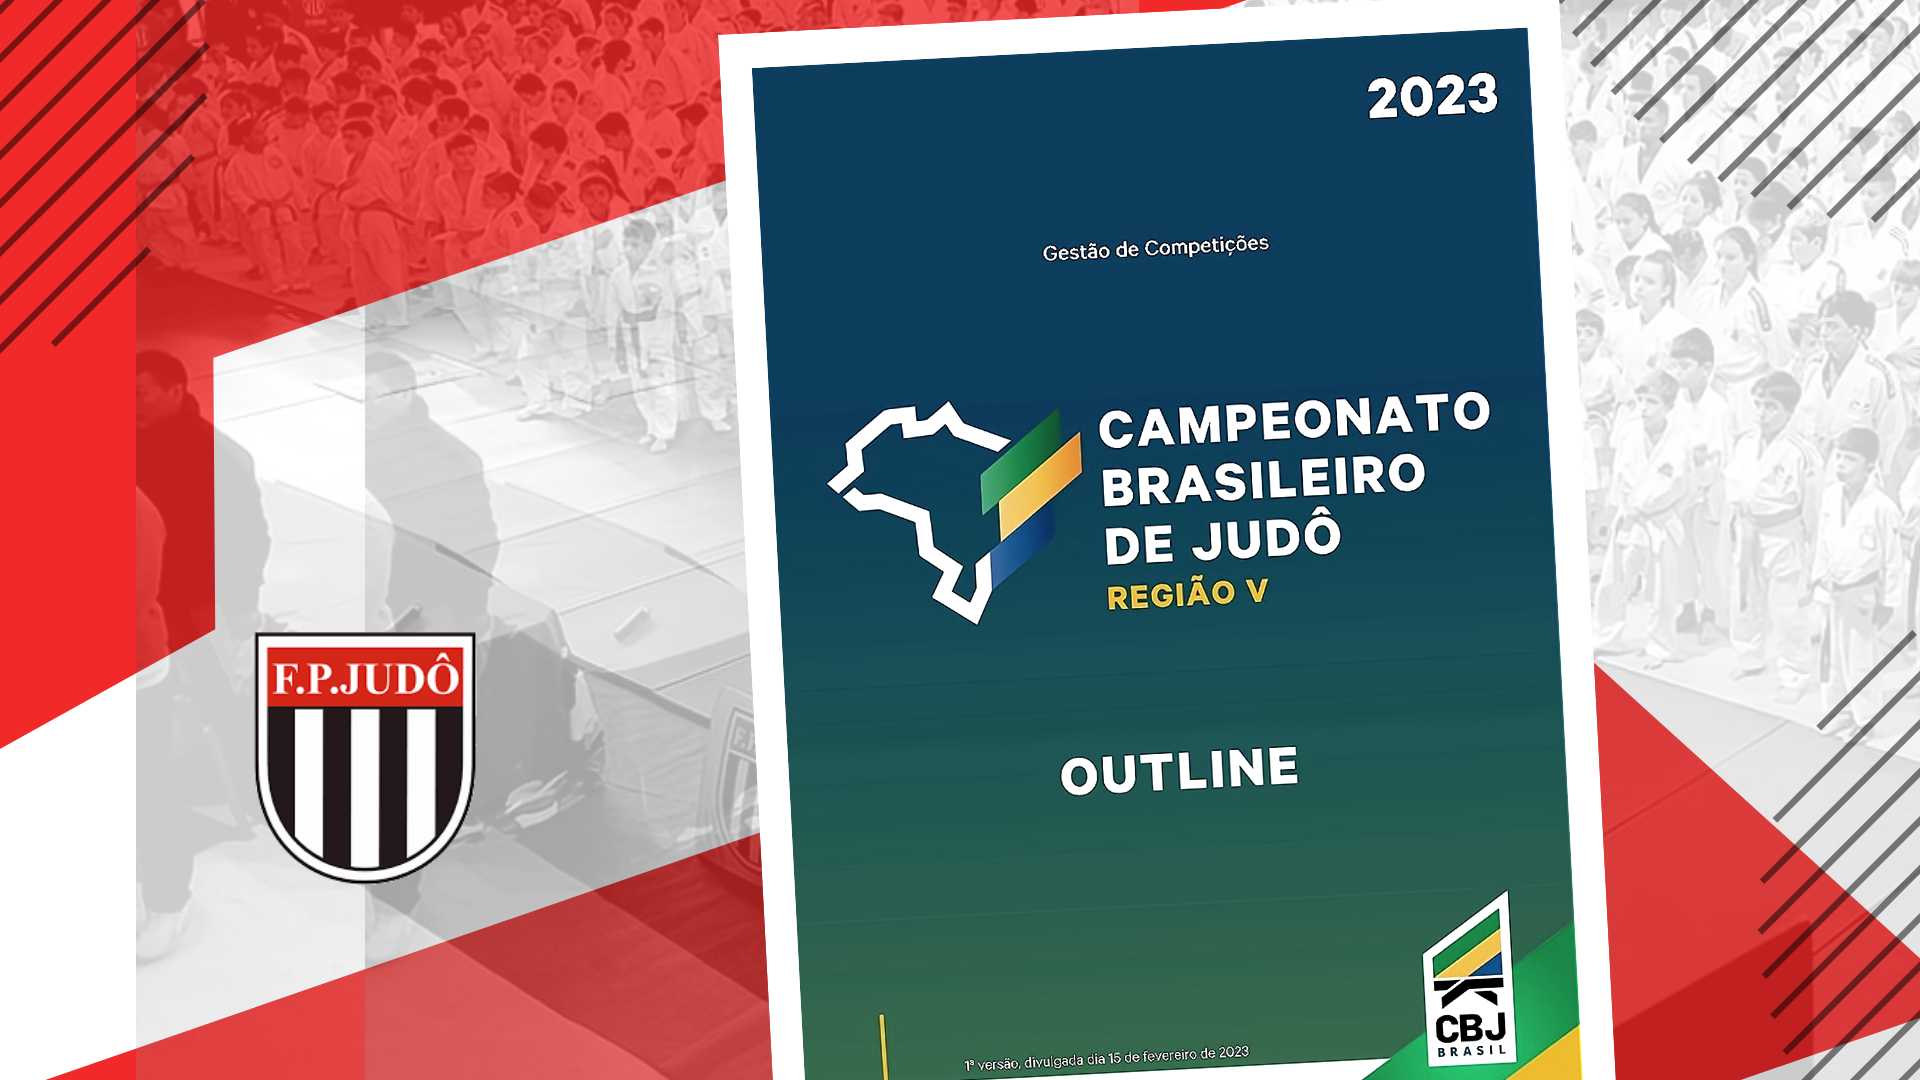 Outline - Campeonato Brasileiro Regional Região V